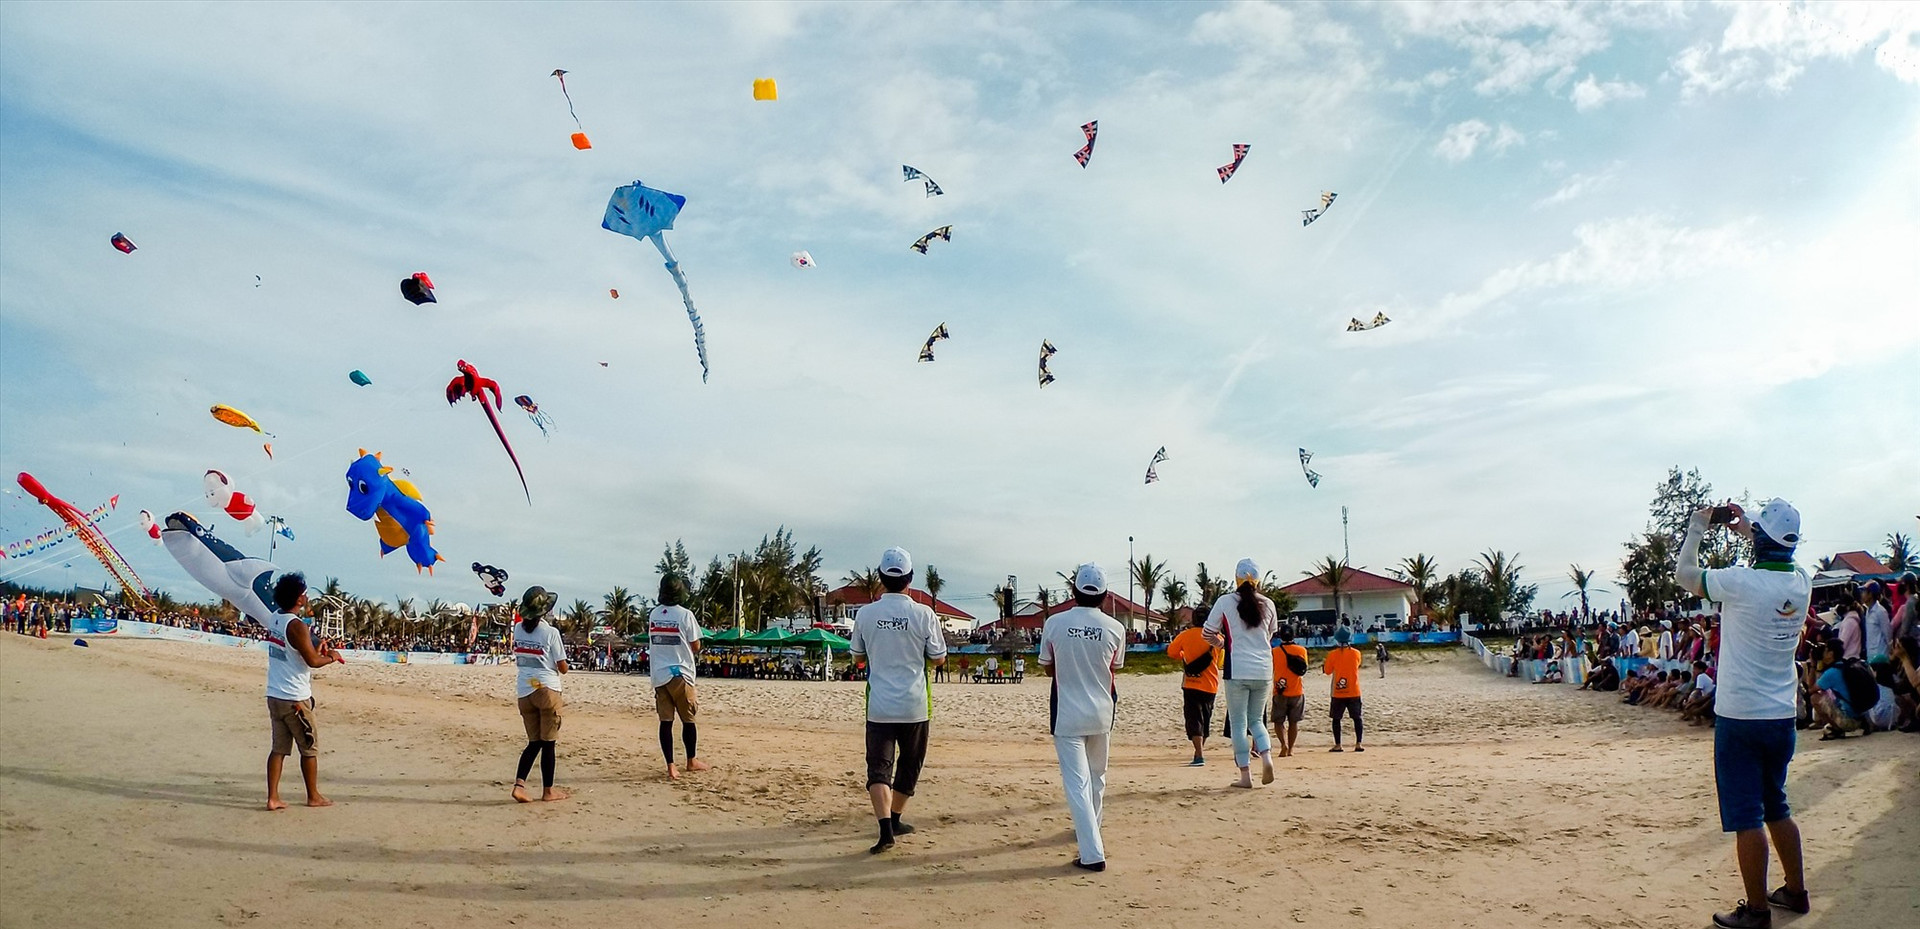 Thế mạnh quan trọng bậc nhất của Quảng Nam là bờ biển dài và đẹp, do đó trong quy hoạch cần chú ý đảm bảo môi trường để thu hút khách du lịch đến tham quan và nghỉ dưỡng. TRONG ẢNH: Festival Diều quốc tế diễn ra vào năm 2017 ở bãi biển Tam Thanh (Tam Kỳ).Ảnh: PHƯƠNG THẢO